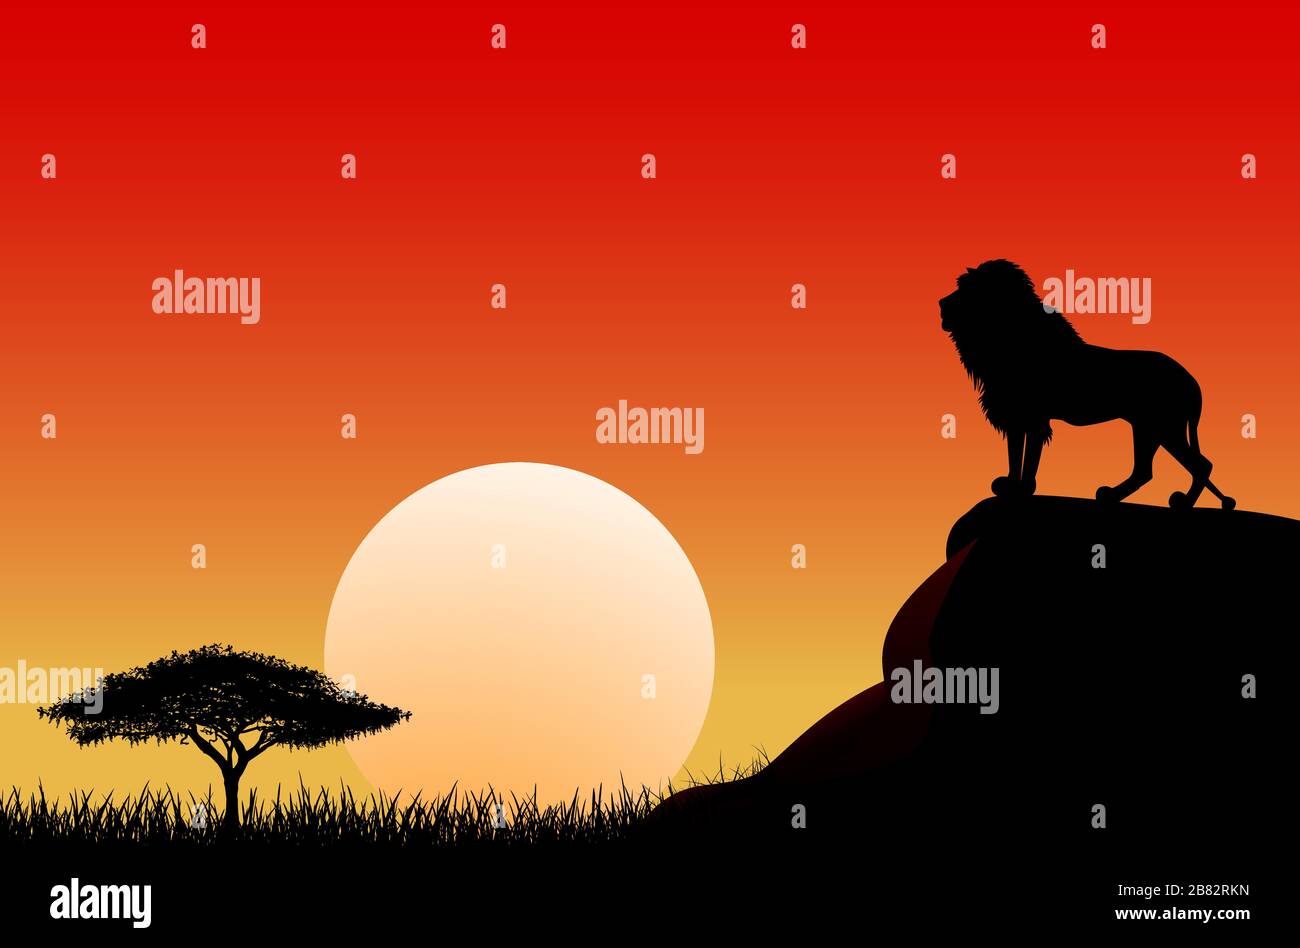 Un lion africain se dresse sur une pierre sur le fond du soleil. Ciel, soleil, coucher de soleil. La nature de la savane africaine. Illustration de Vecteur